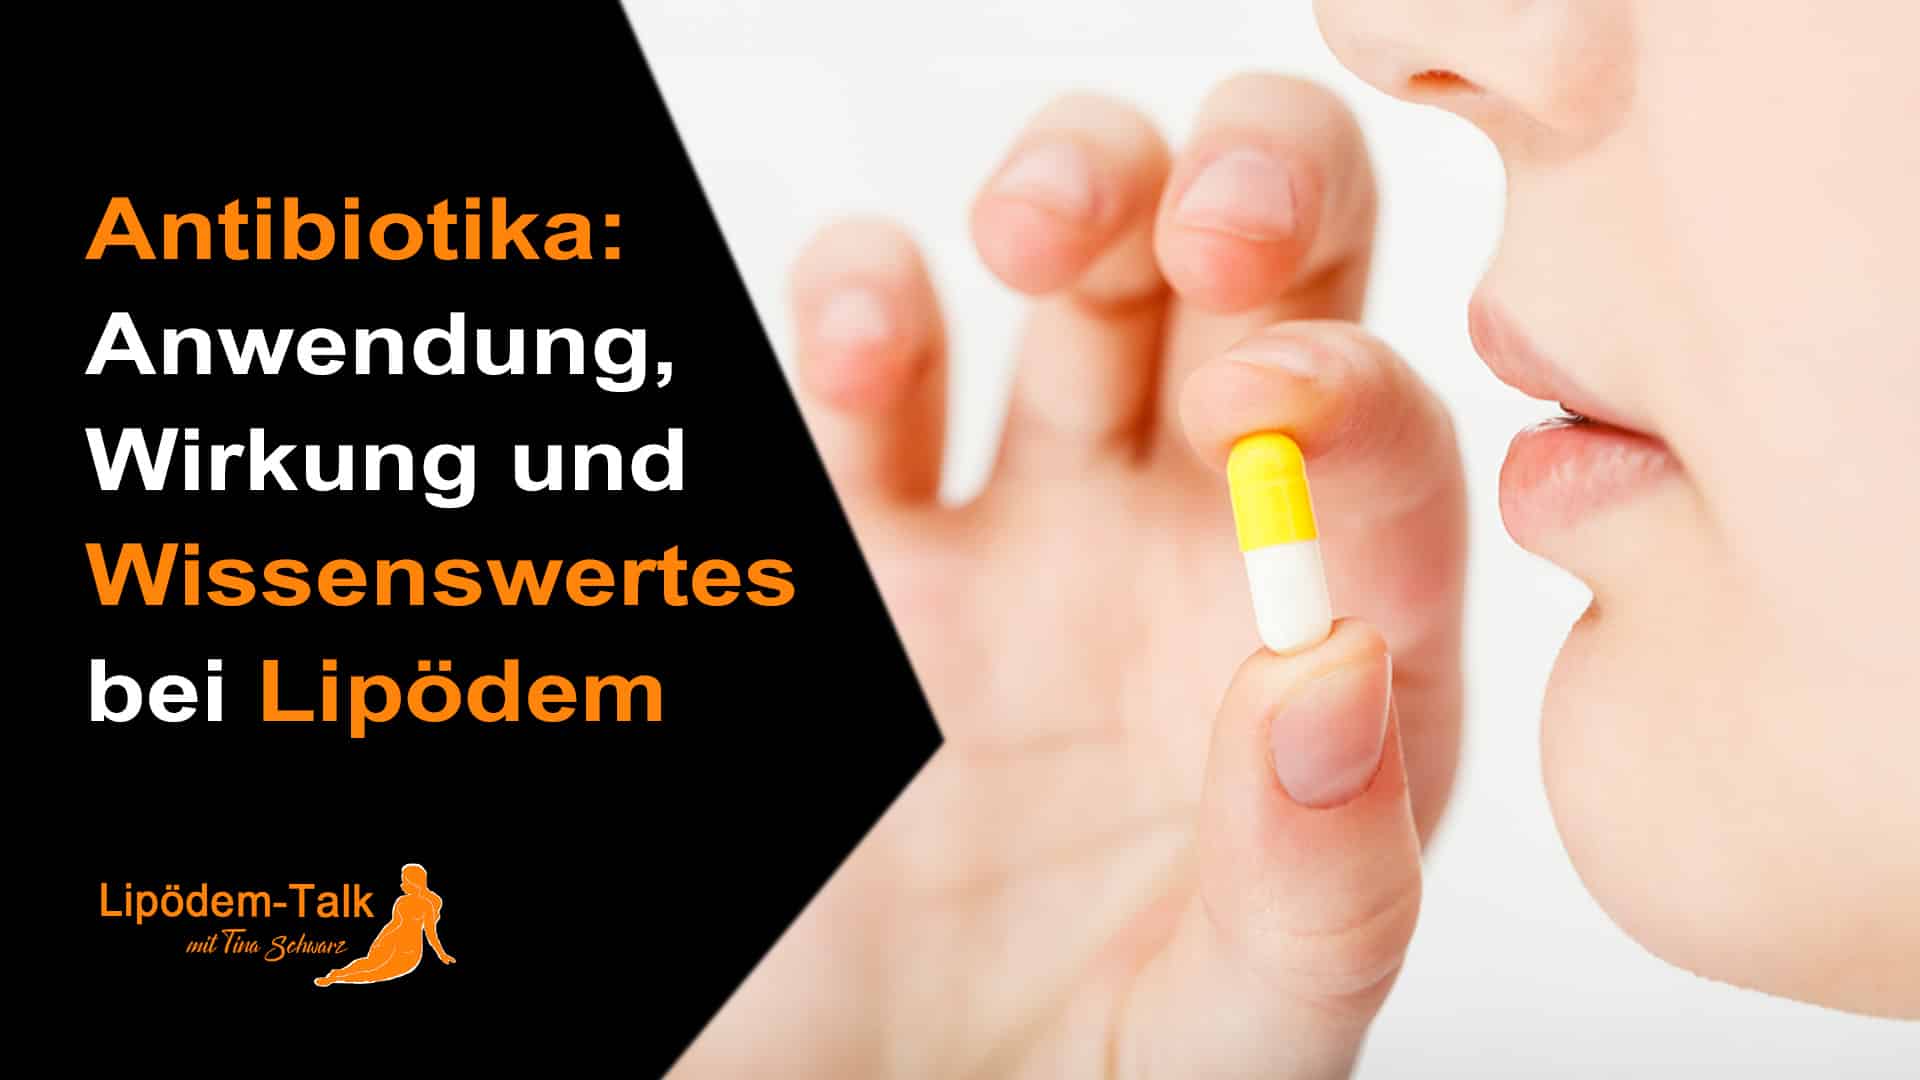 Antibiotika - Anwendung, Wirkung und Wissenswertes bei Lipödem